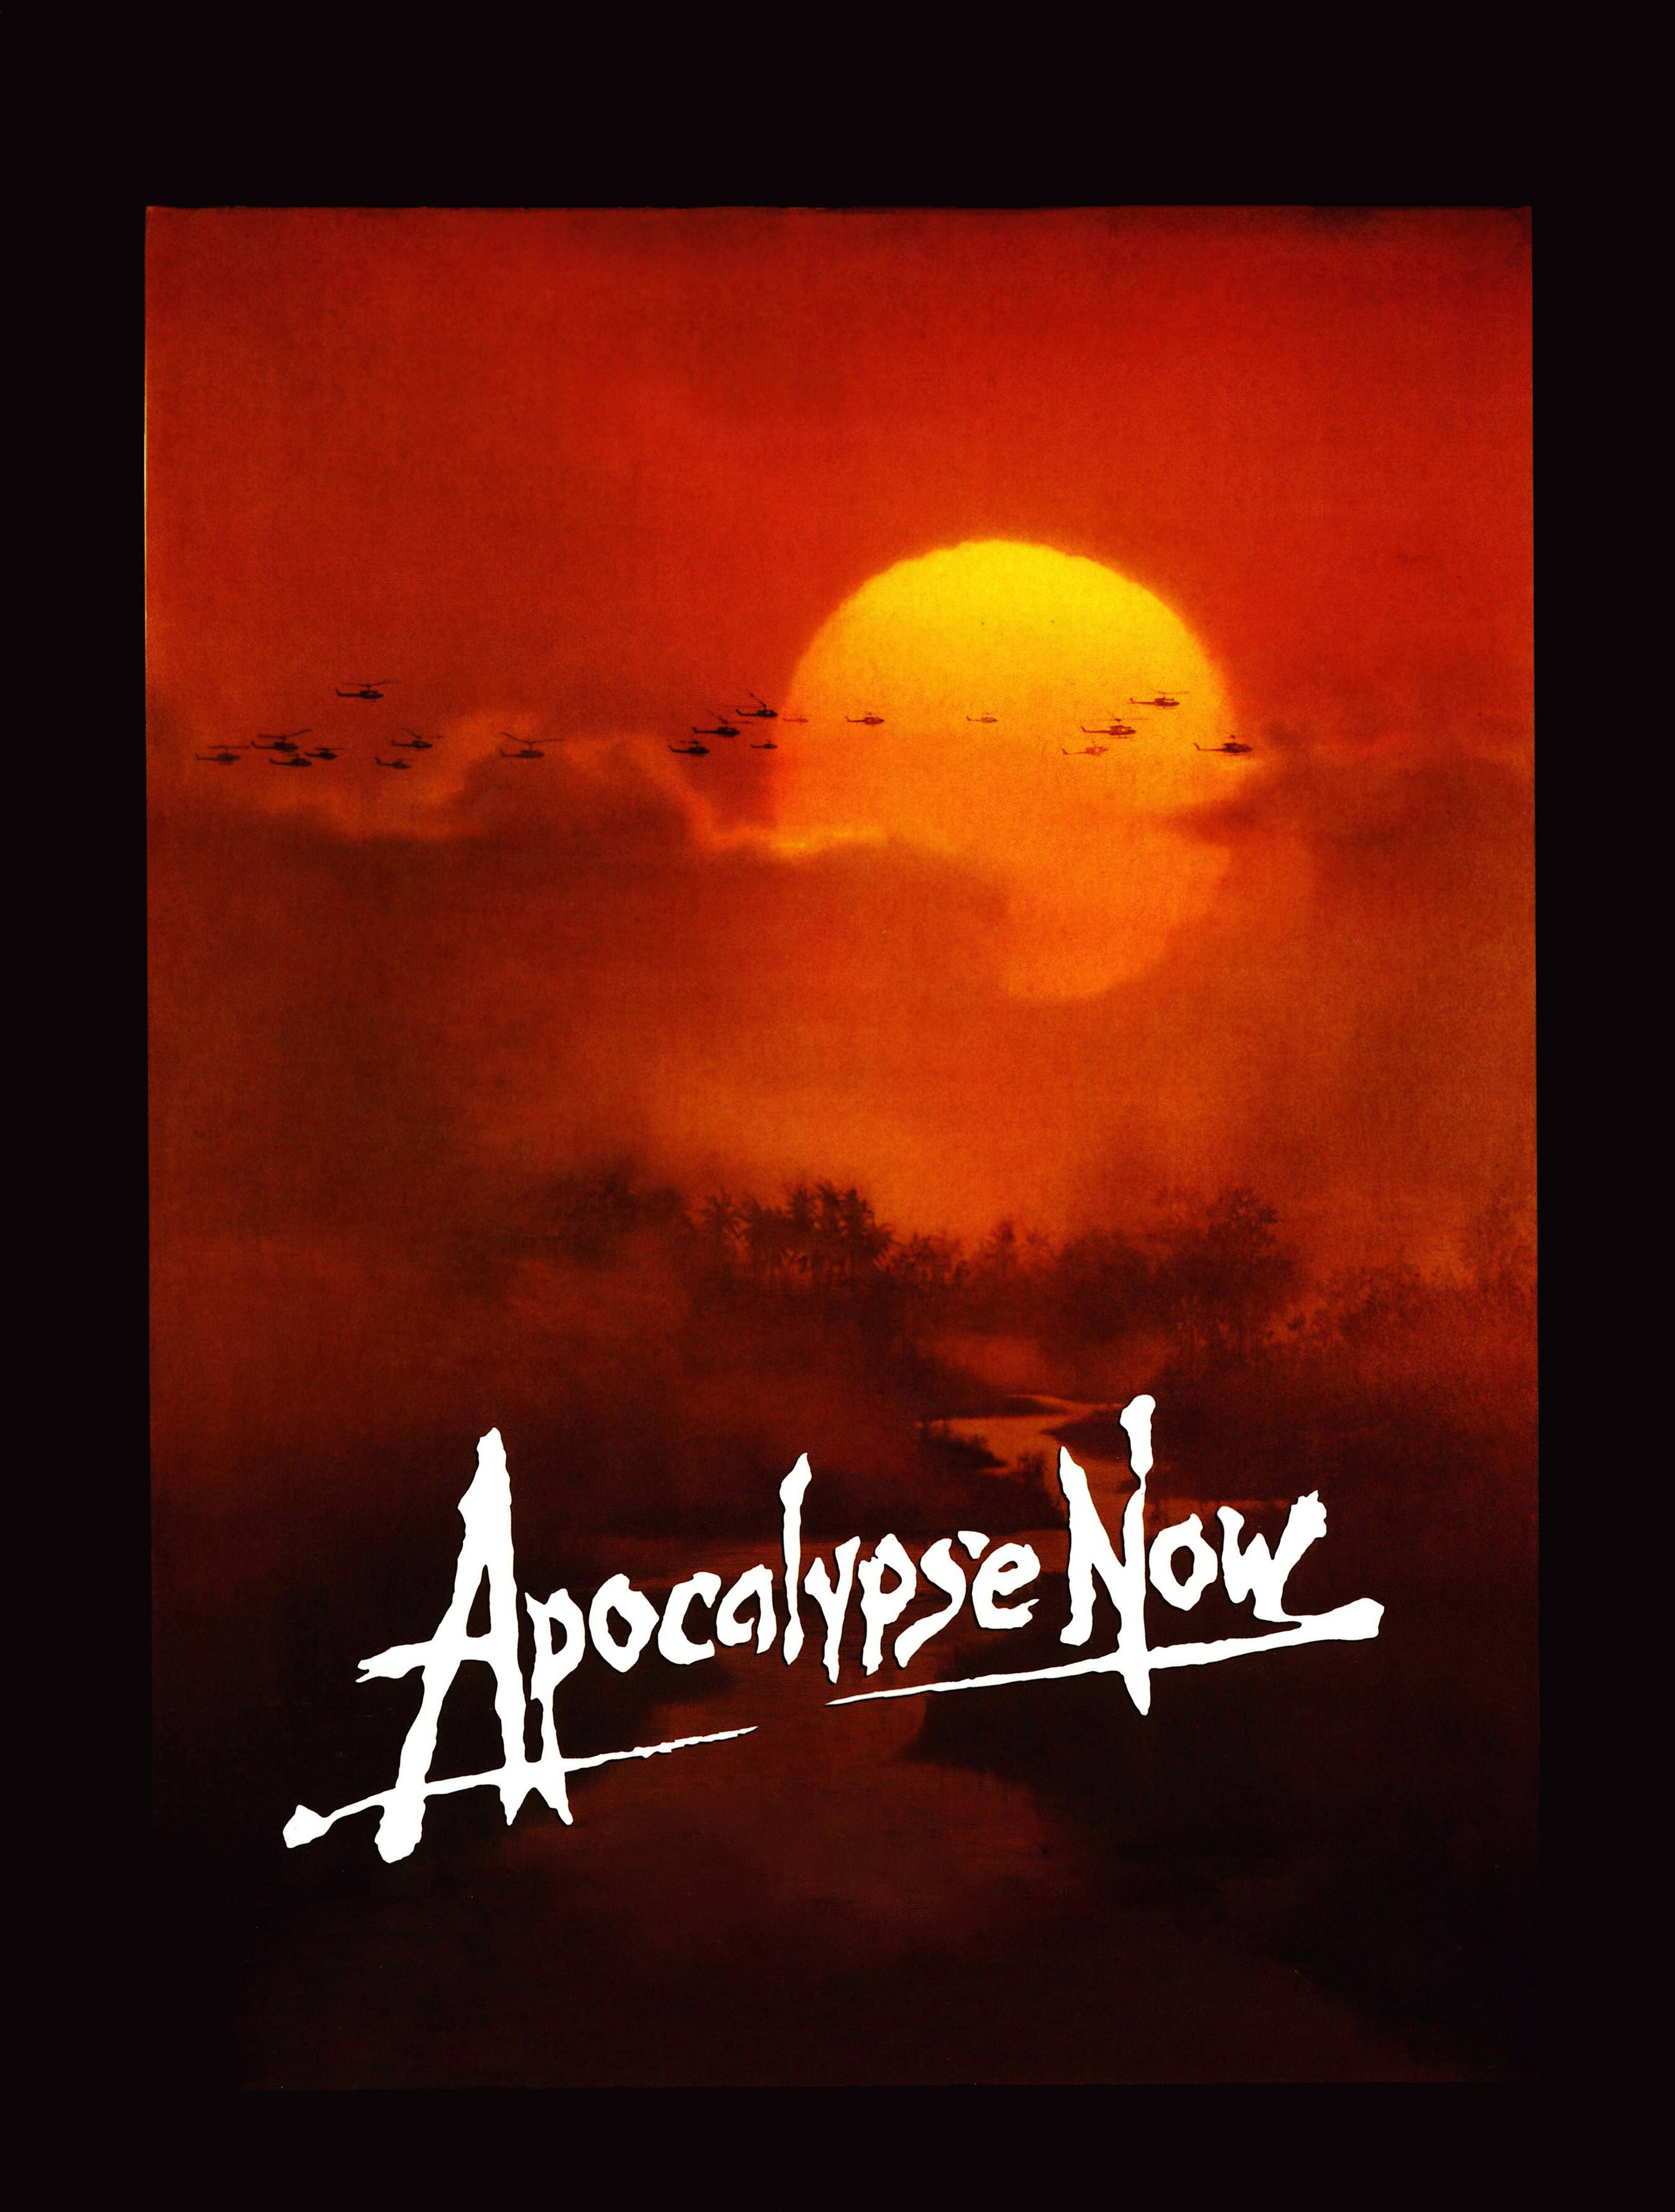 Apocalypse Now 1920×1080 Wallpaper 865859